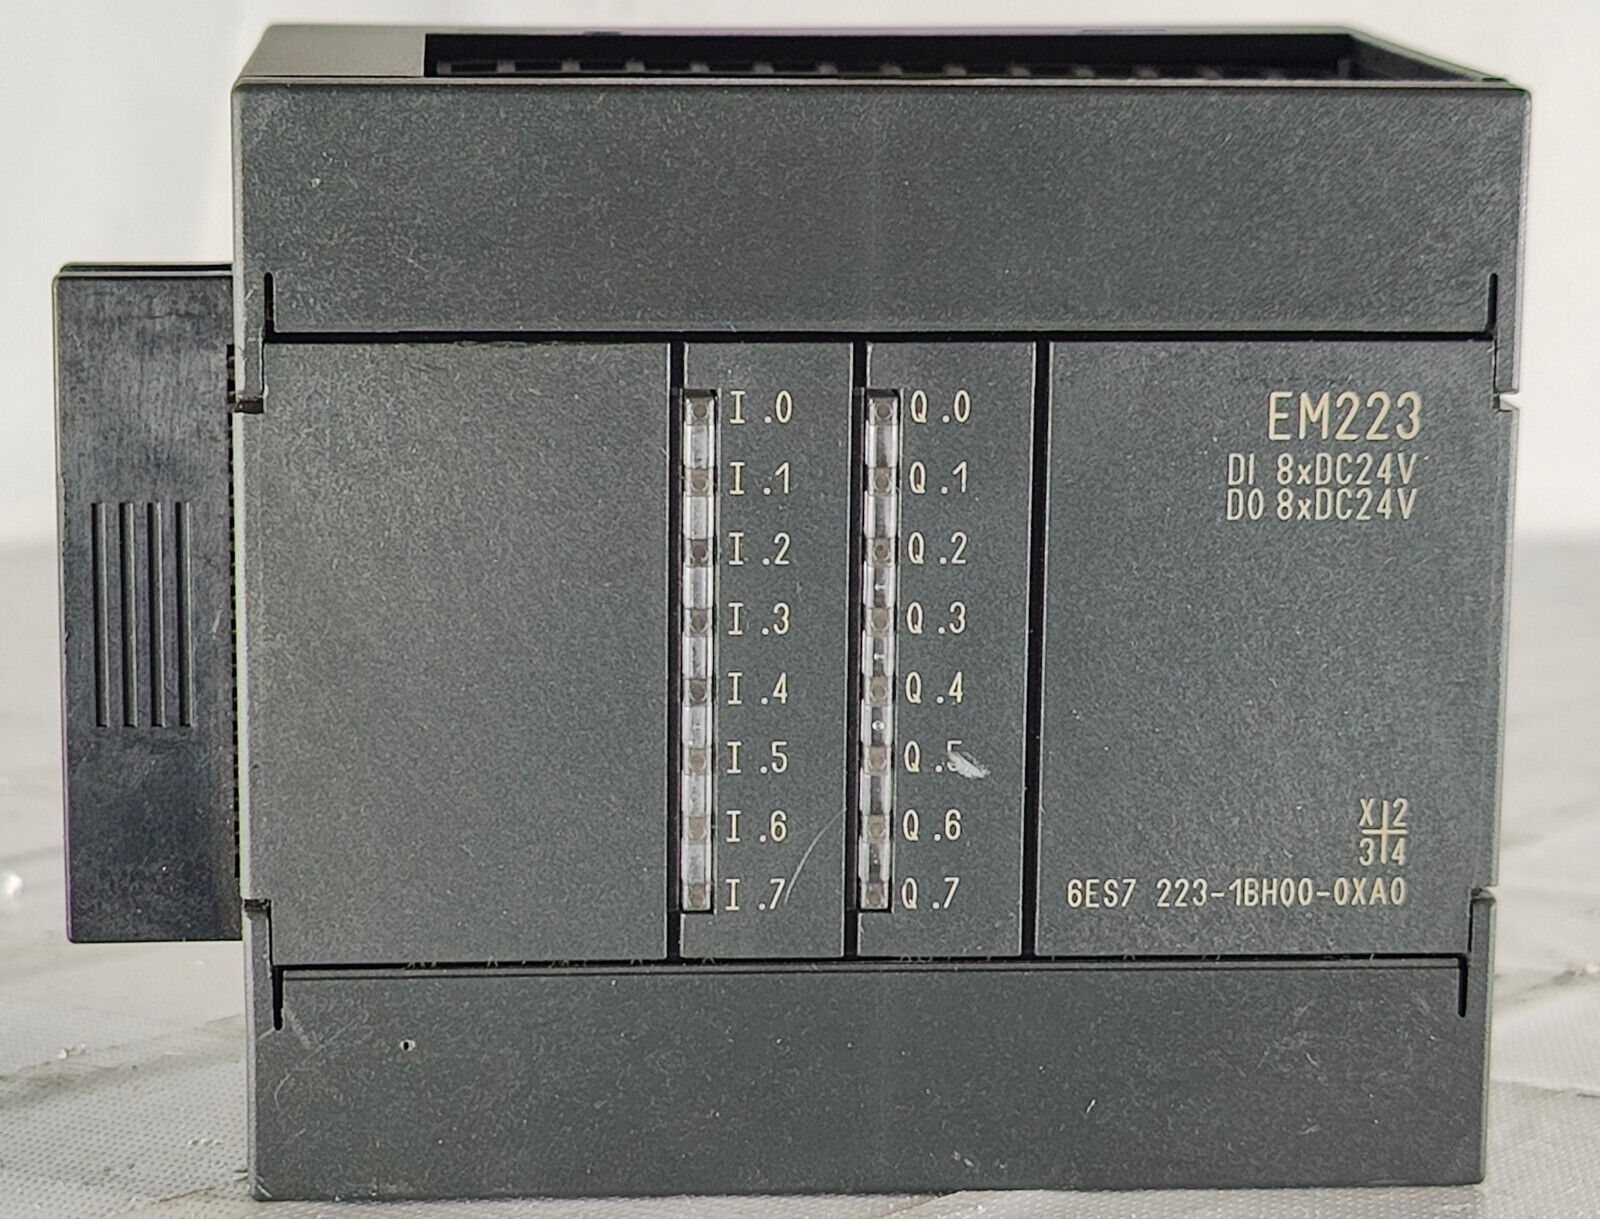 Siemens EM223 DI 8xDC24V DO 8xDC24V 6ES7 223-1BH00-0XA0 Input Output Module